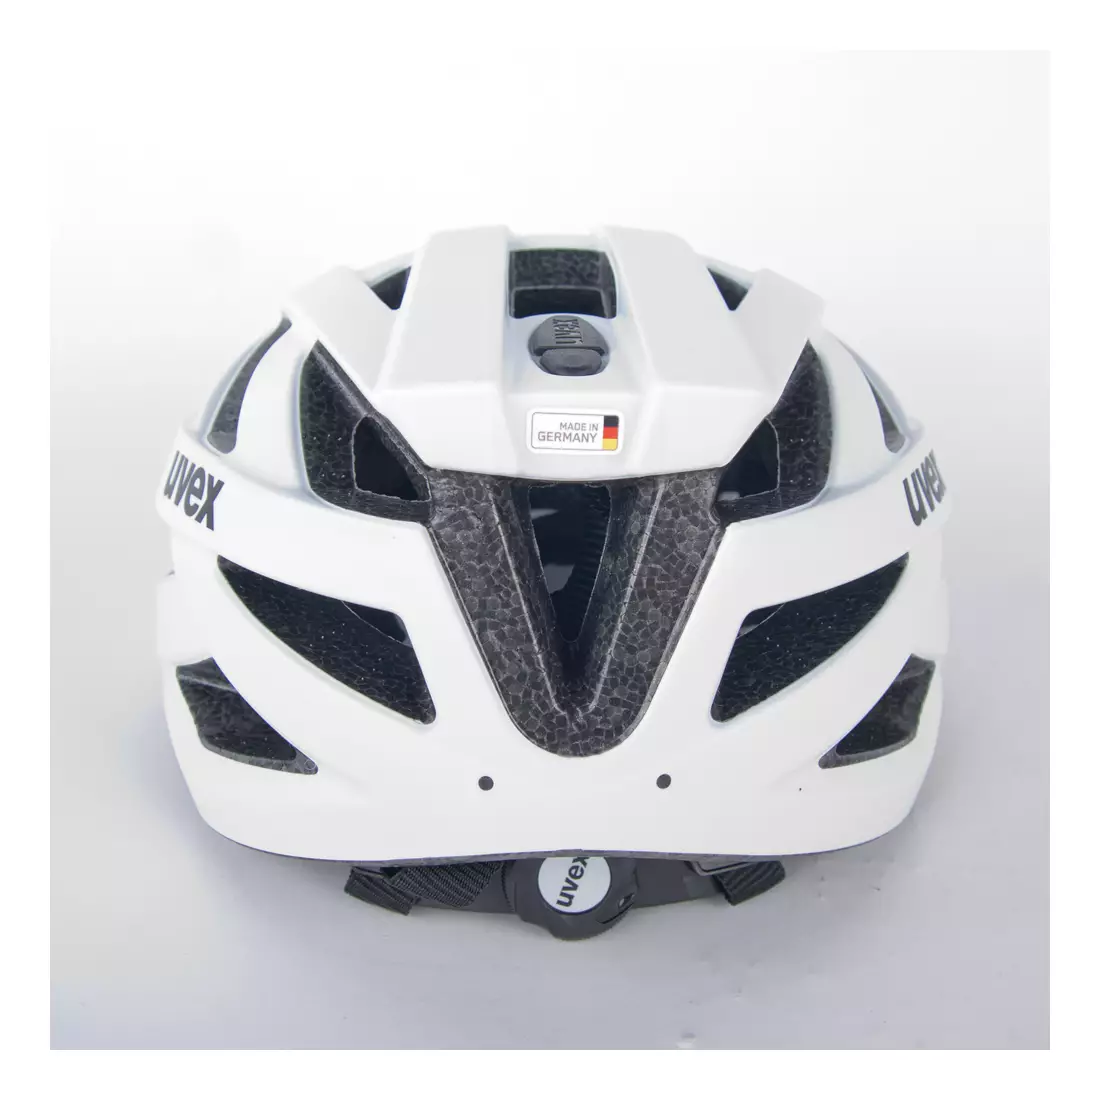 Bicycle helmet UVEX I-vo cc white matt